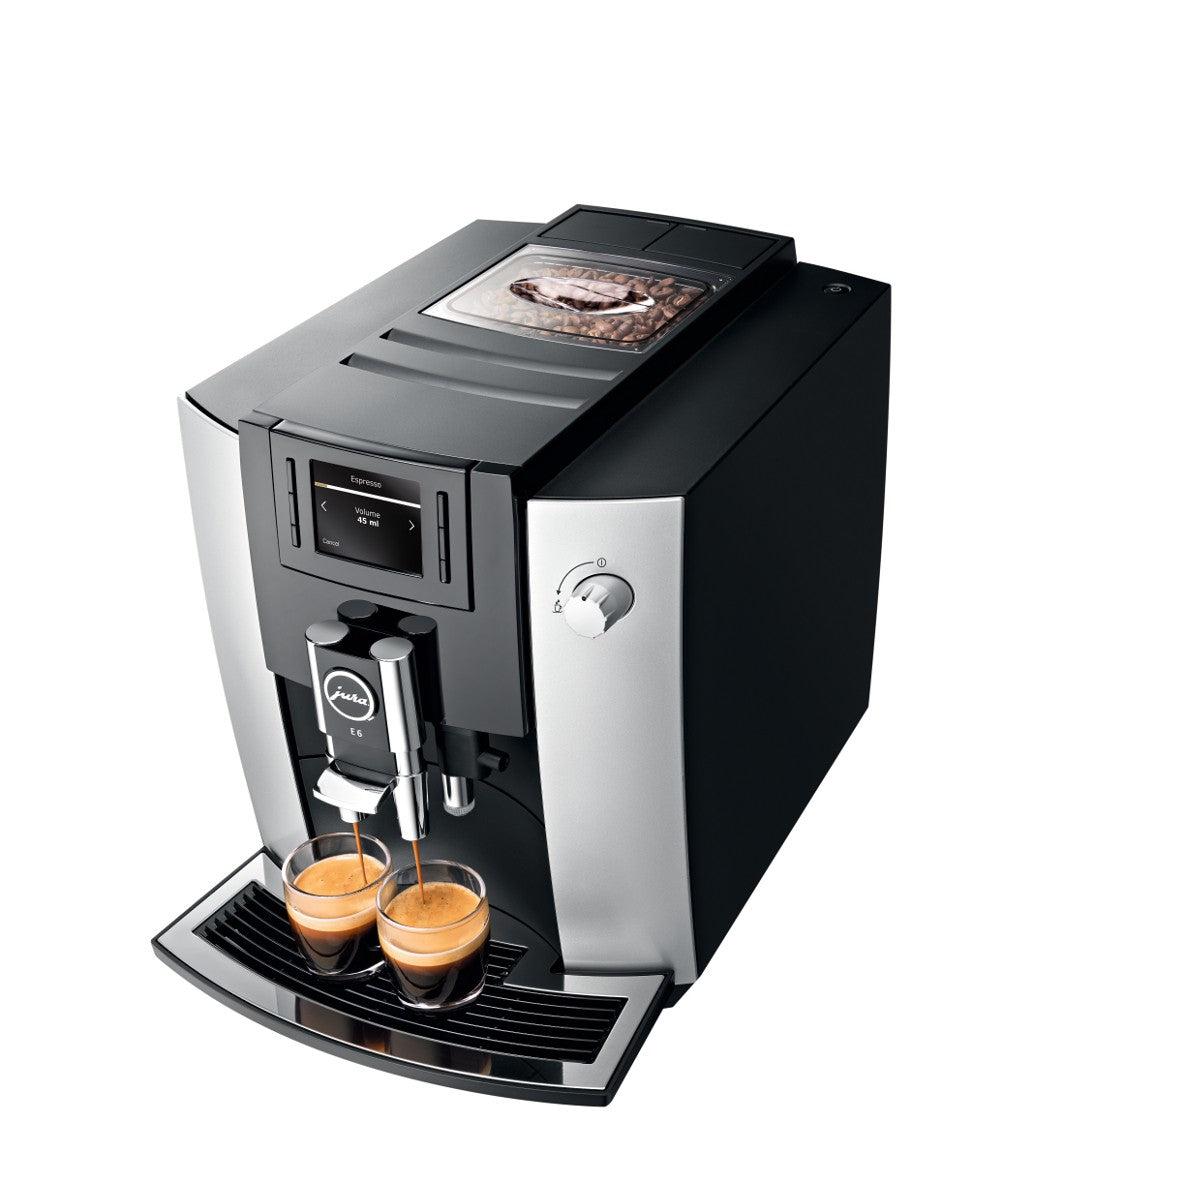 Machine espresso JURA E6 platinum